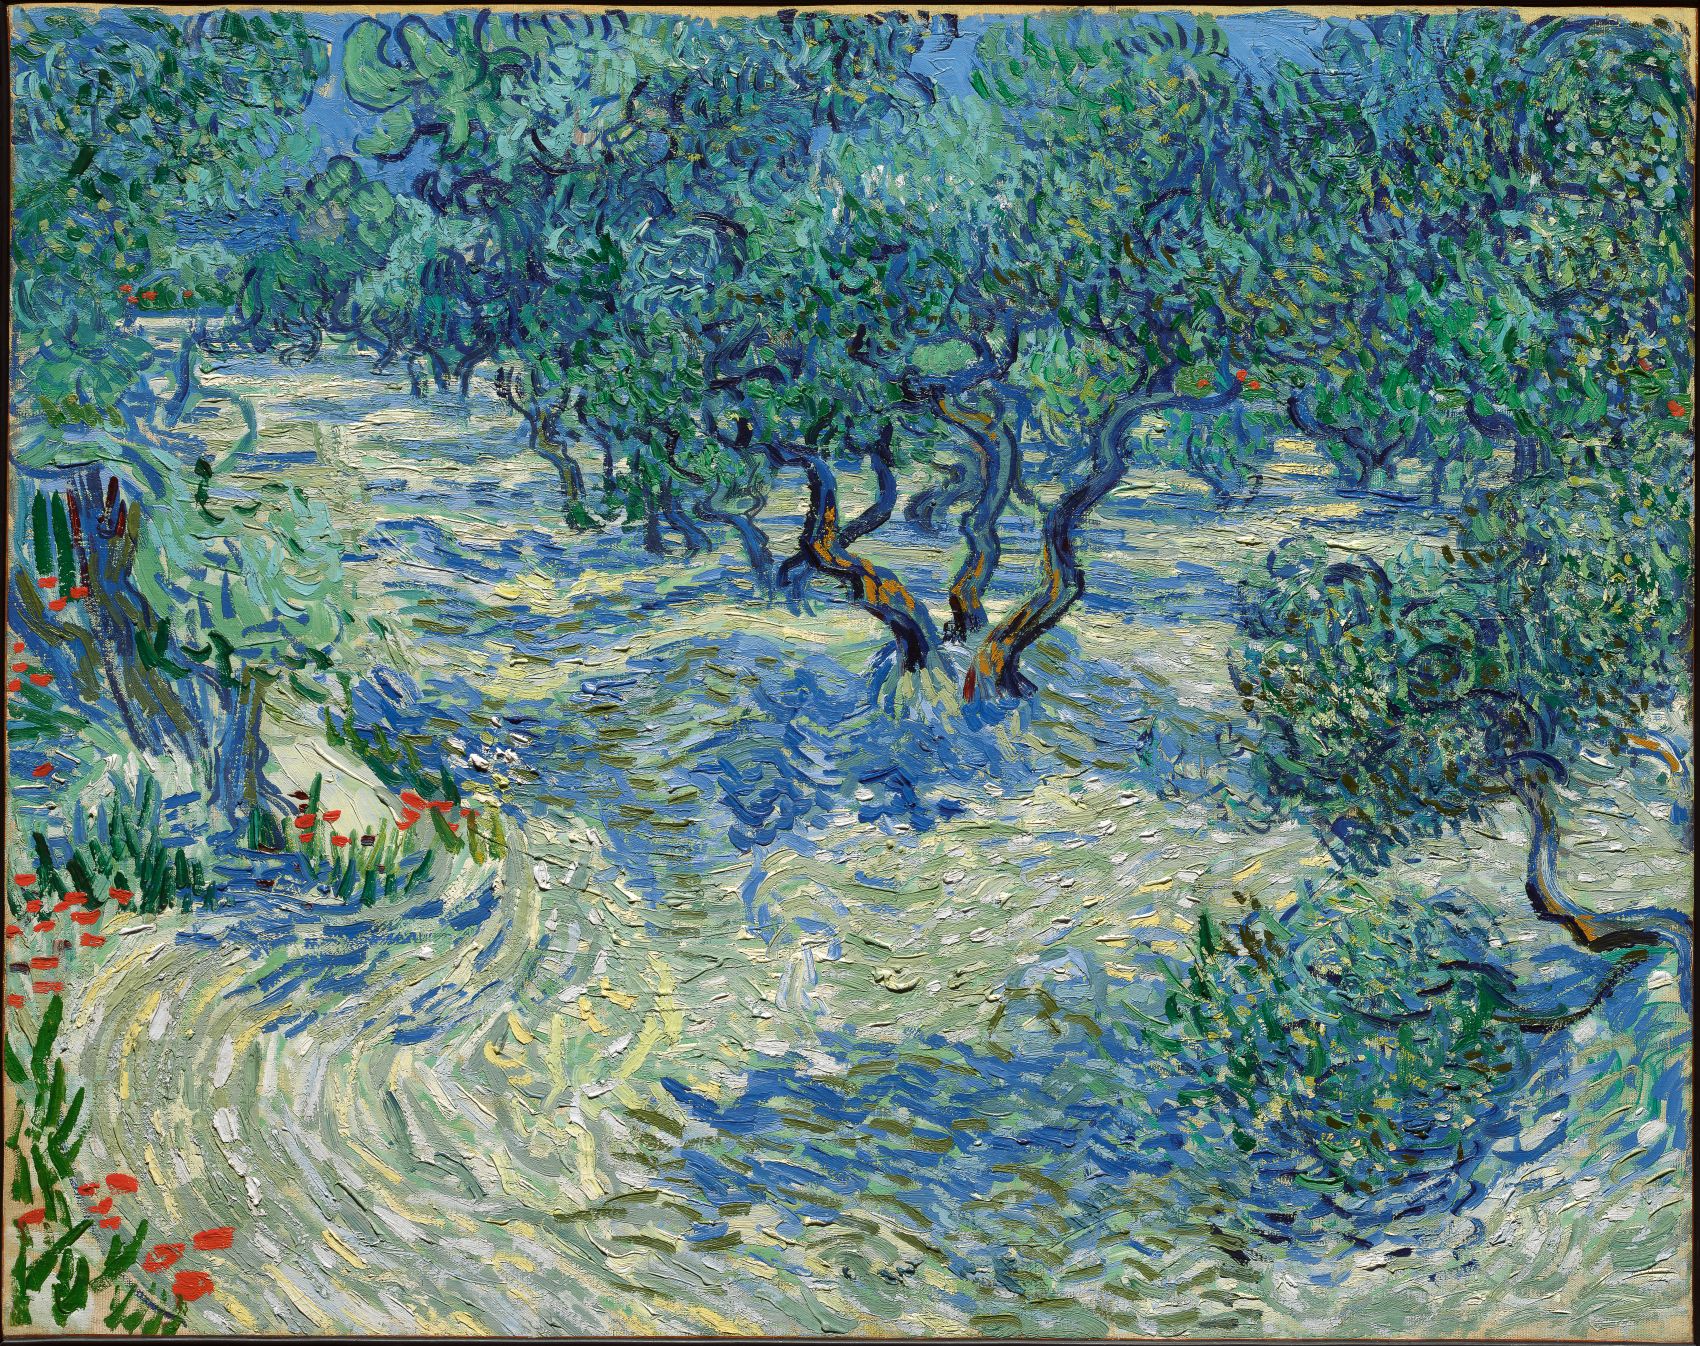 Olivenbäume by Vincent van Gogh - 1889 - 73,2 x 92,2 cm Nelson-Atkins Museum of Art